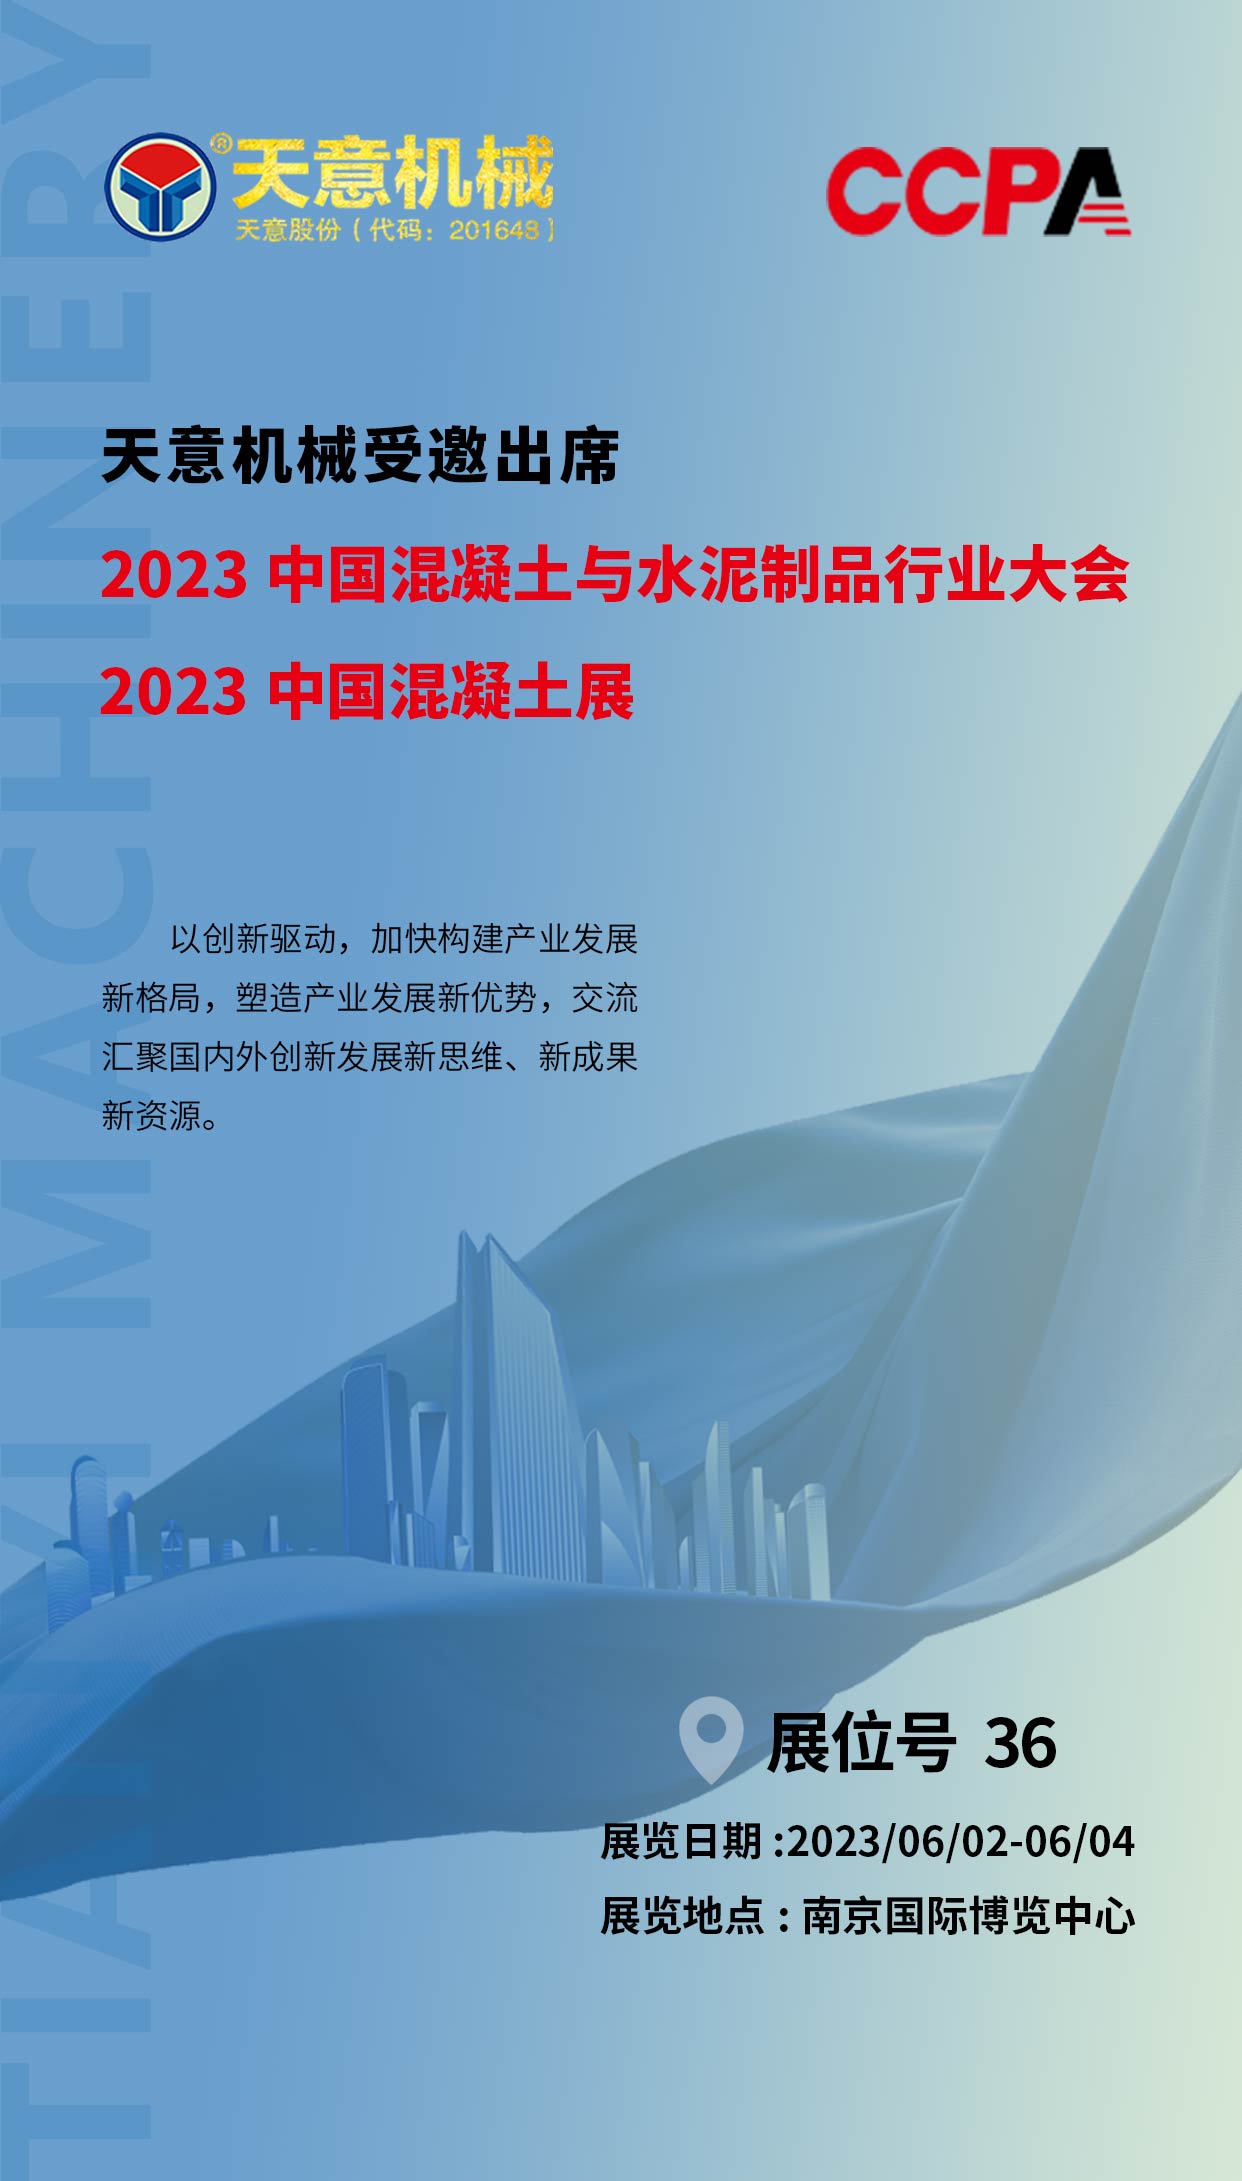 六月初 我们在南京丨2023中国混凝土展聚焦行业热点 引领建筑新时代